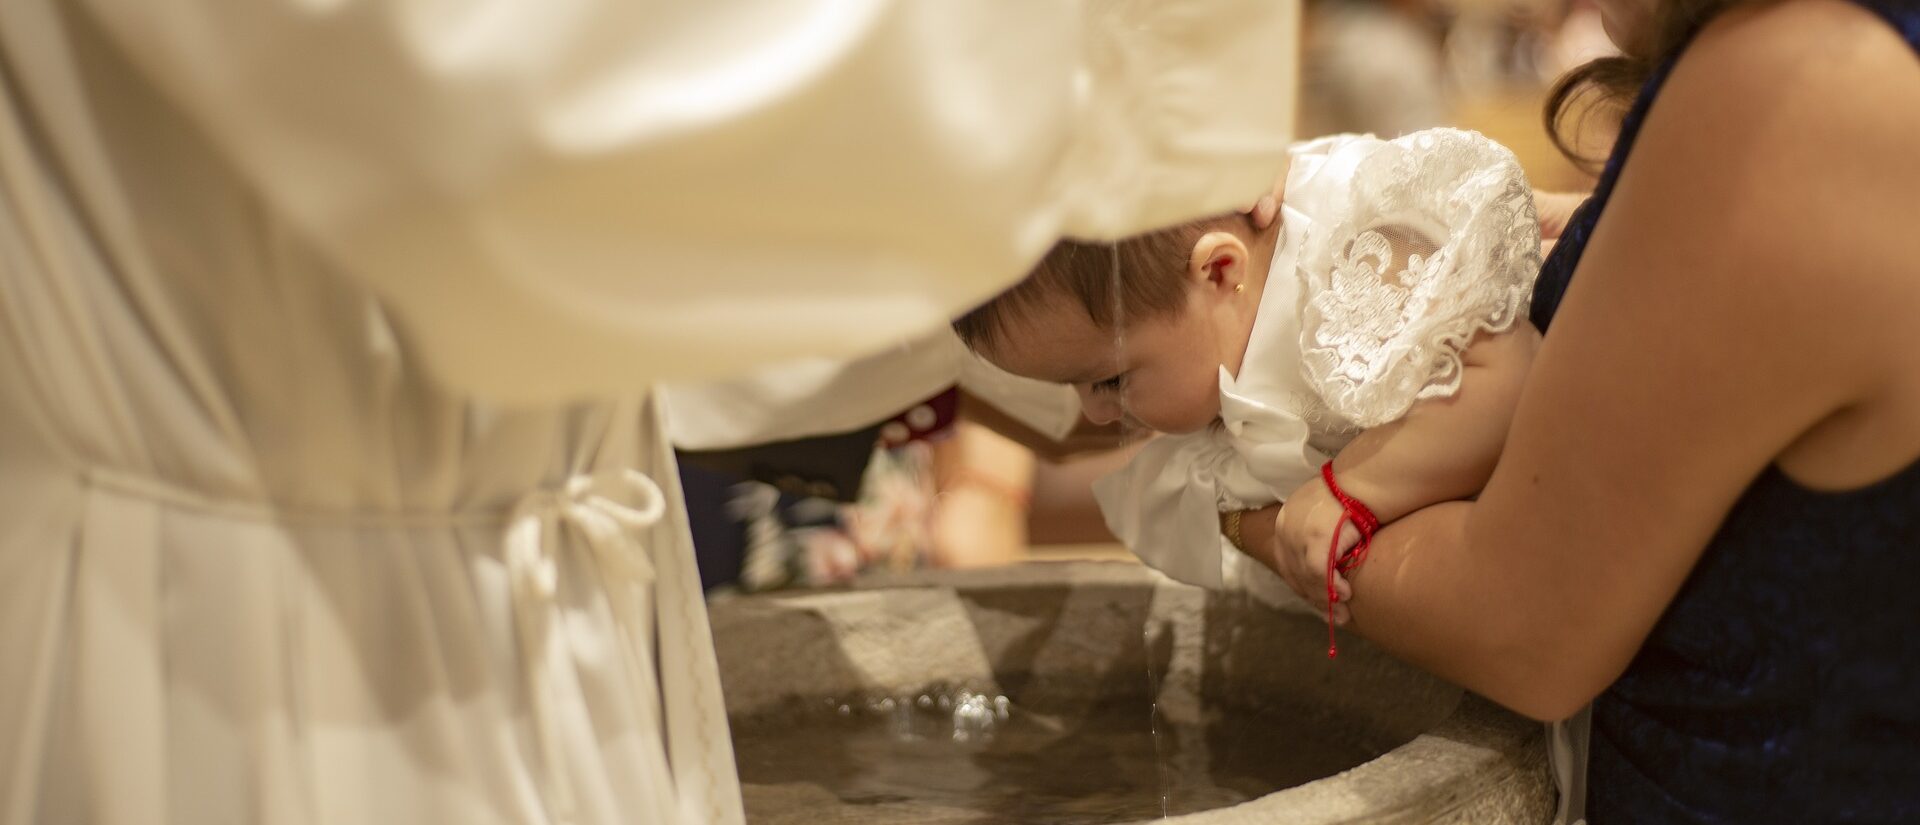 Le baptême est une pratique en baisse en Suisse et dans les pays occidentaux (Pixabay.com)